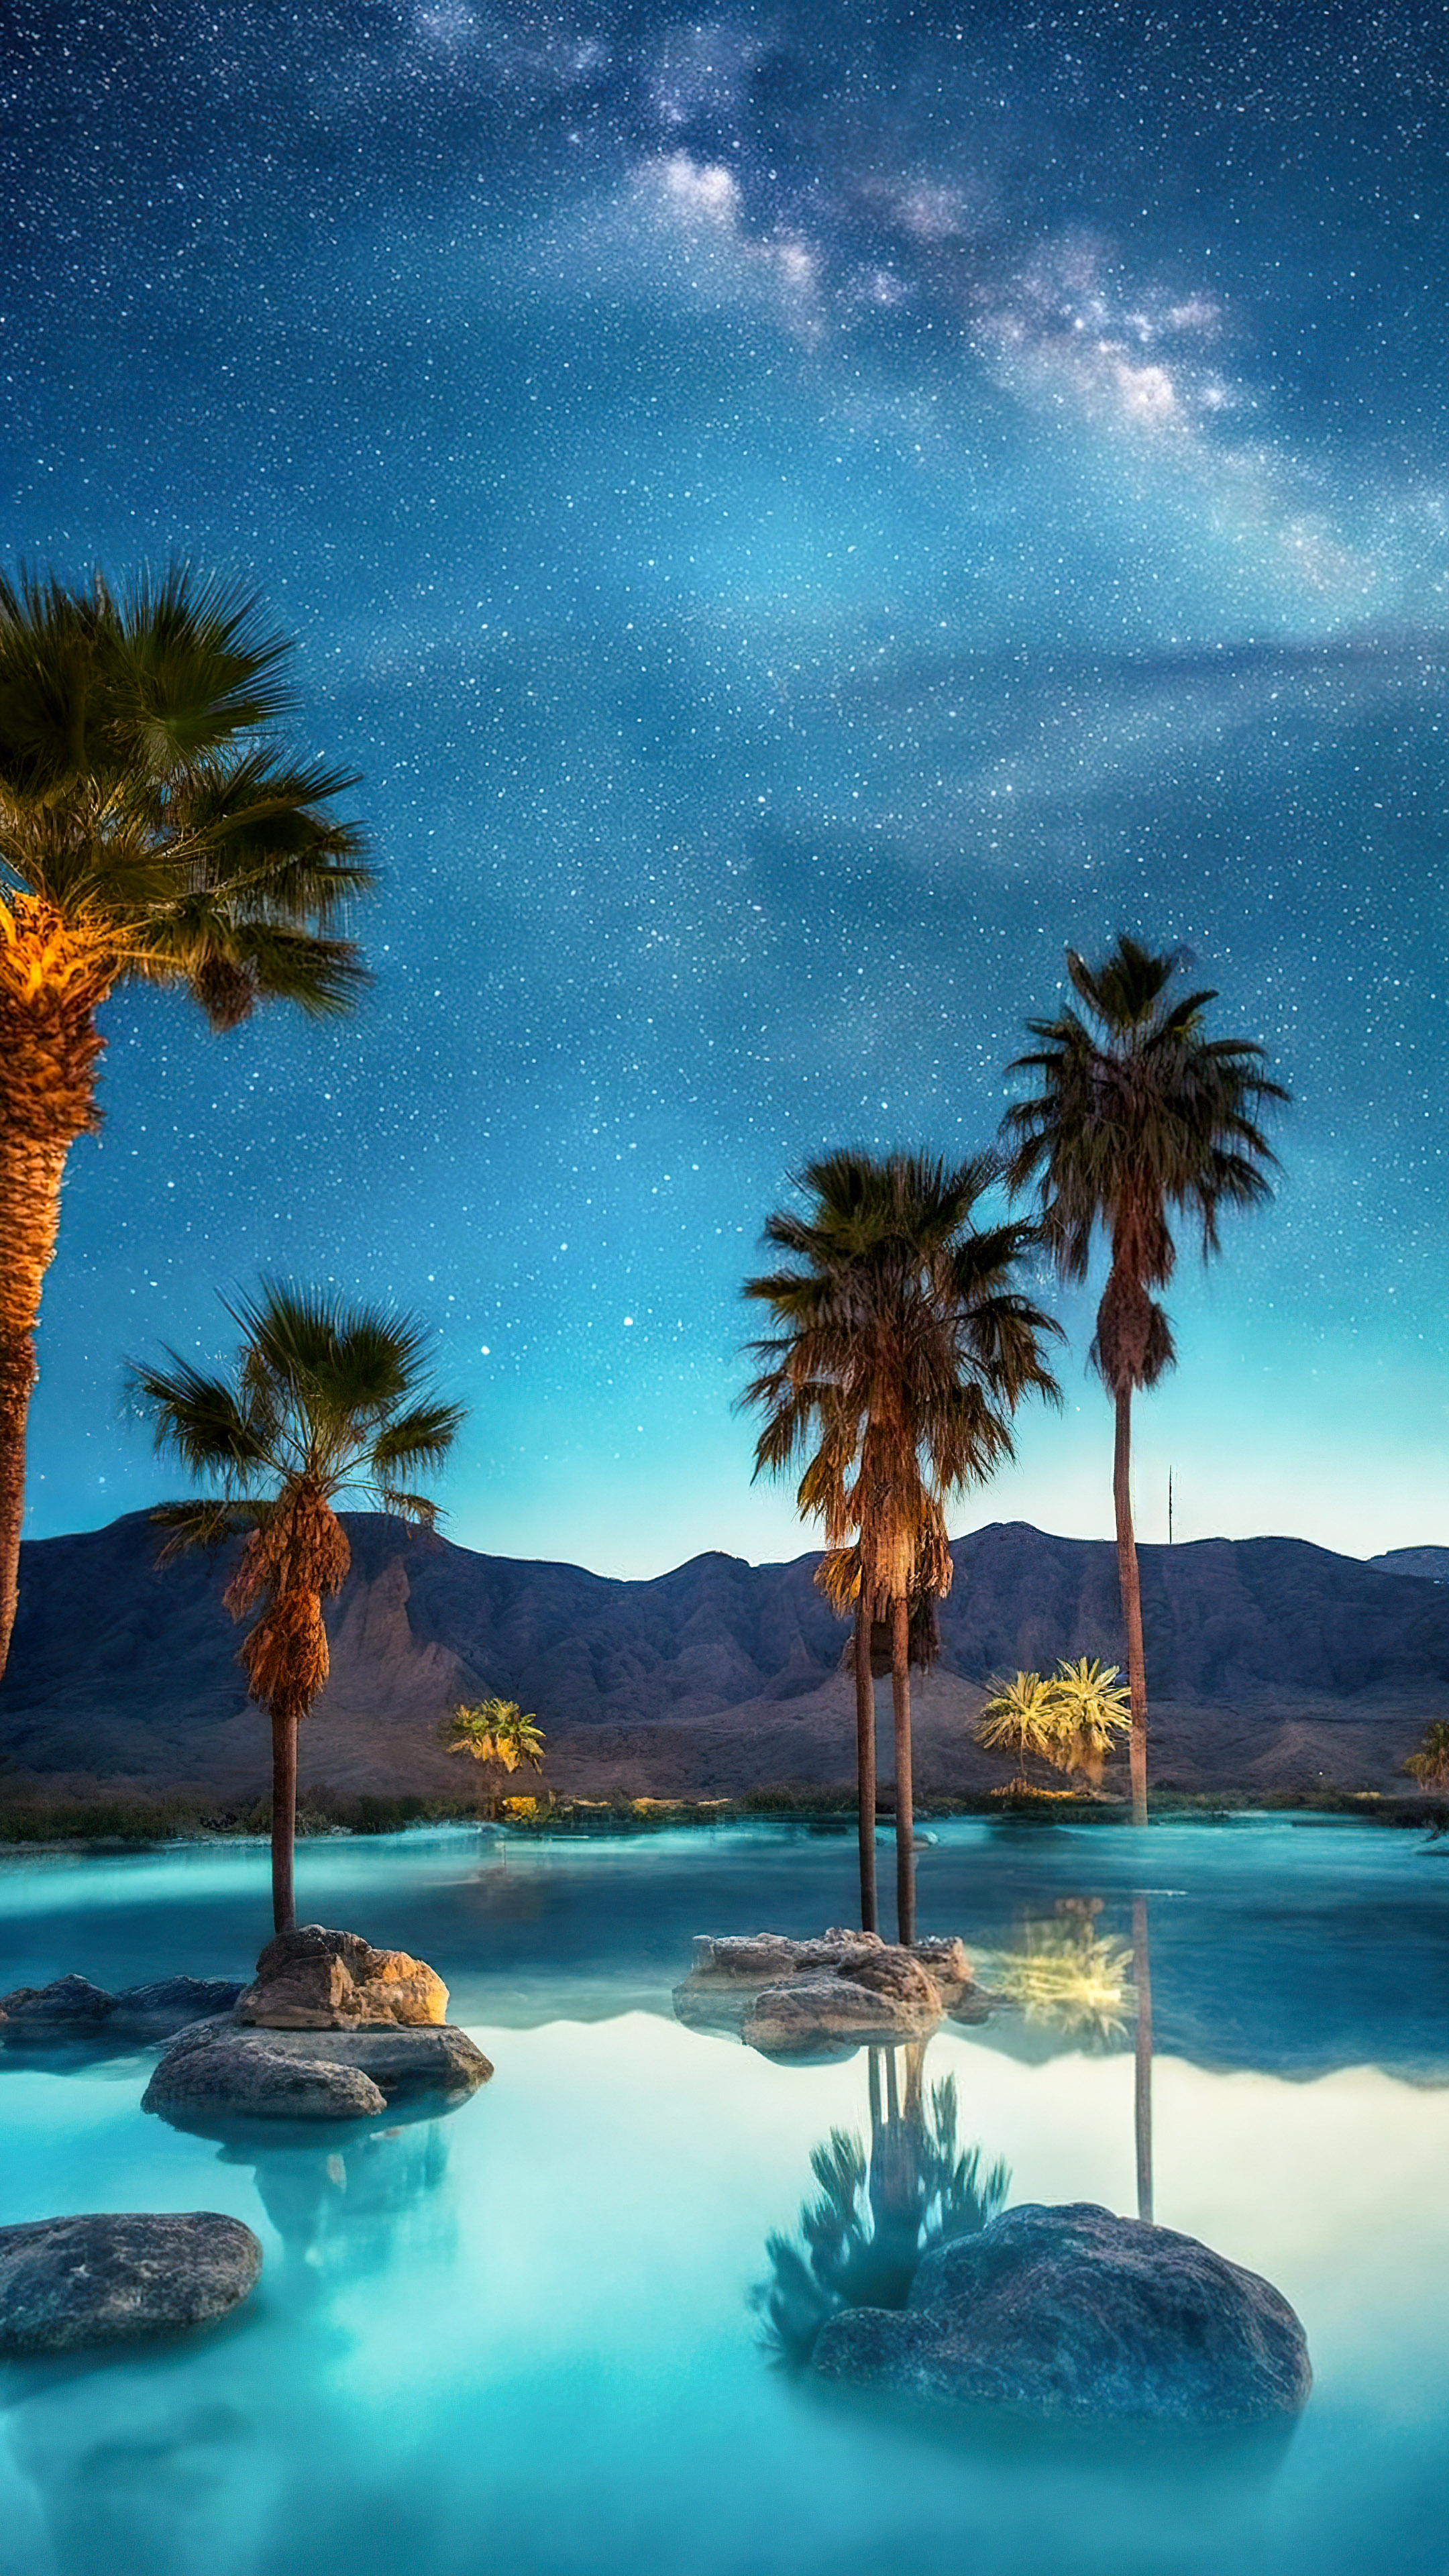 Transformez l'écran de votre appareil mobile avec notre fond d'écran de plage nocturne, où des palmiers entourent une piscine sereine et étoilée.